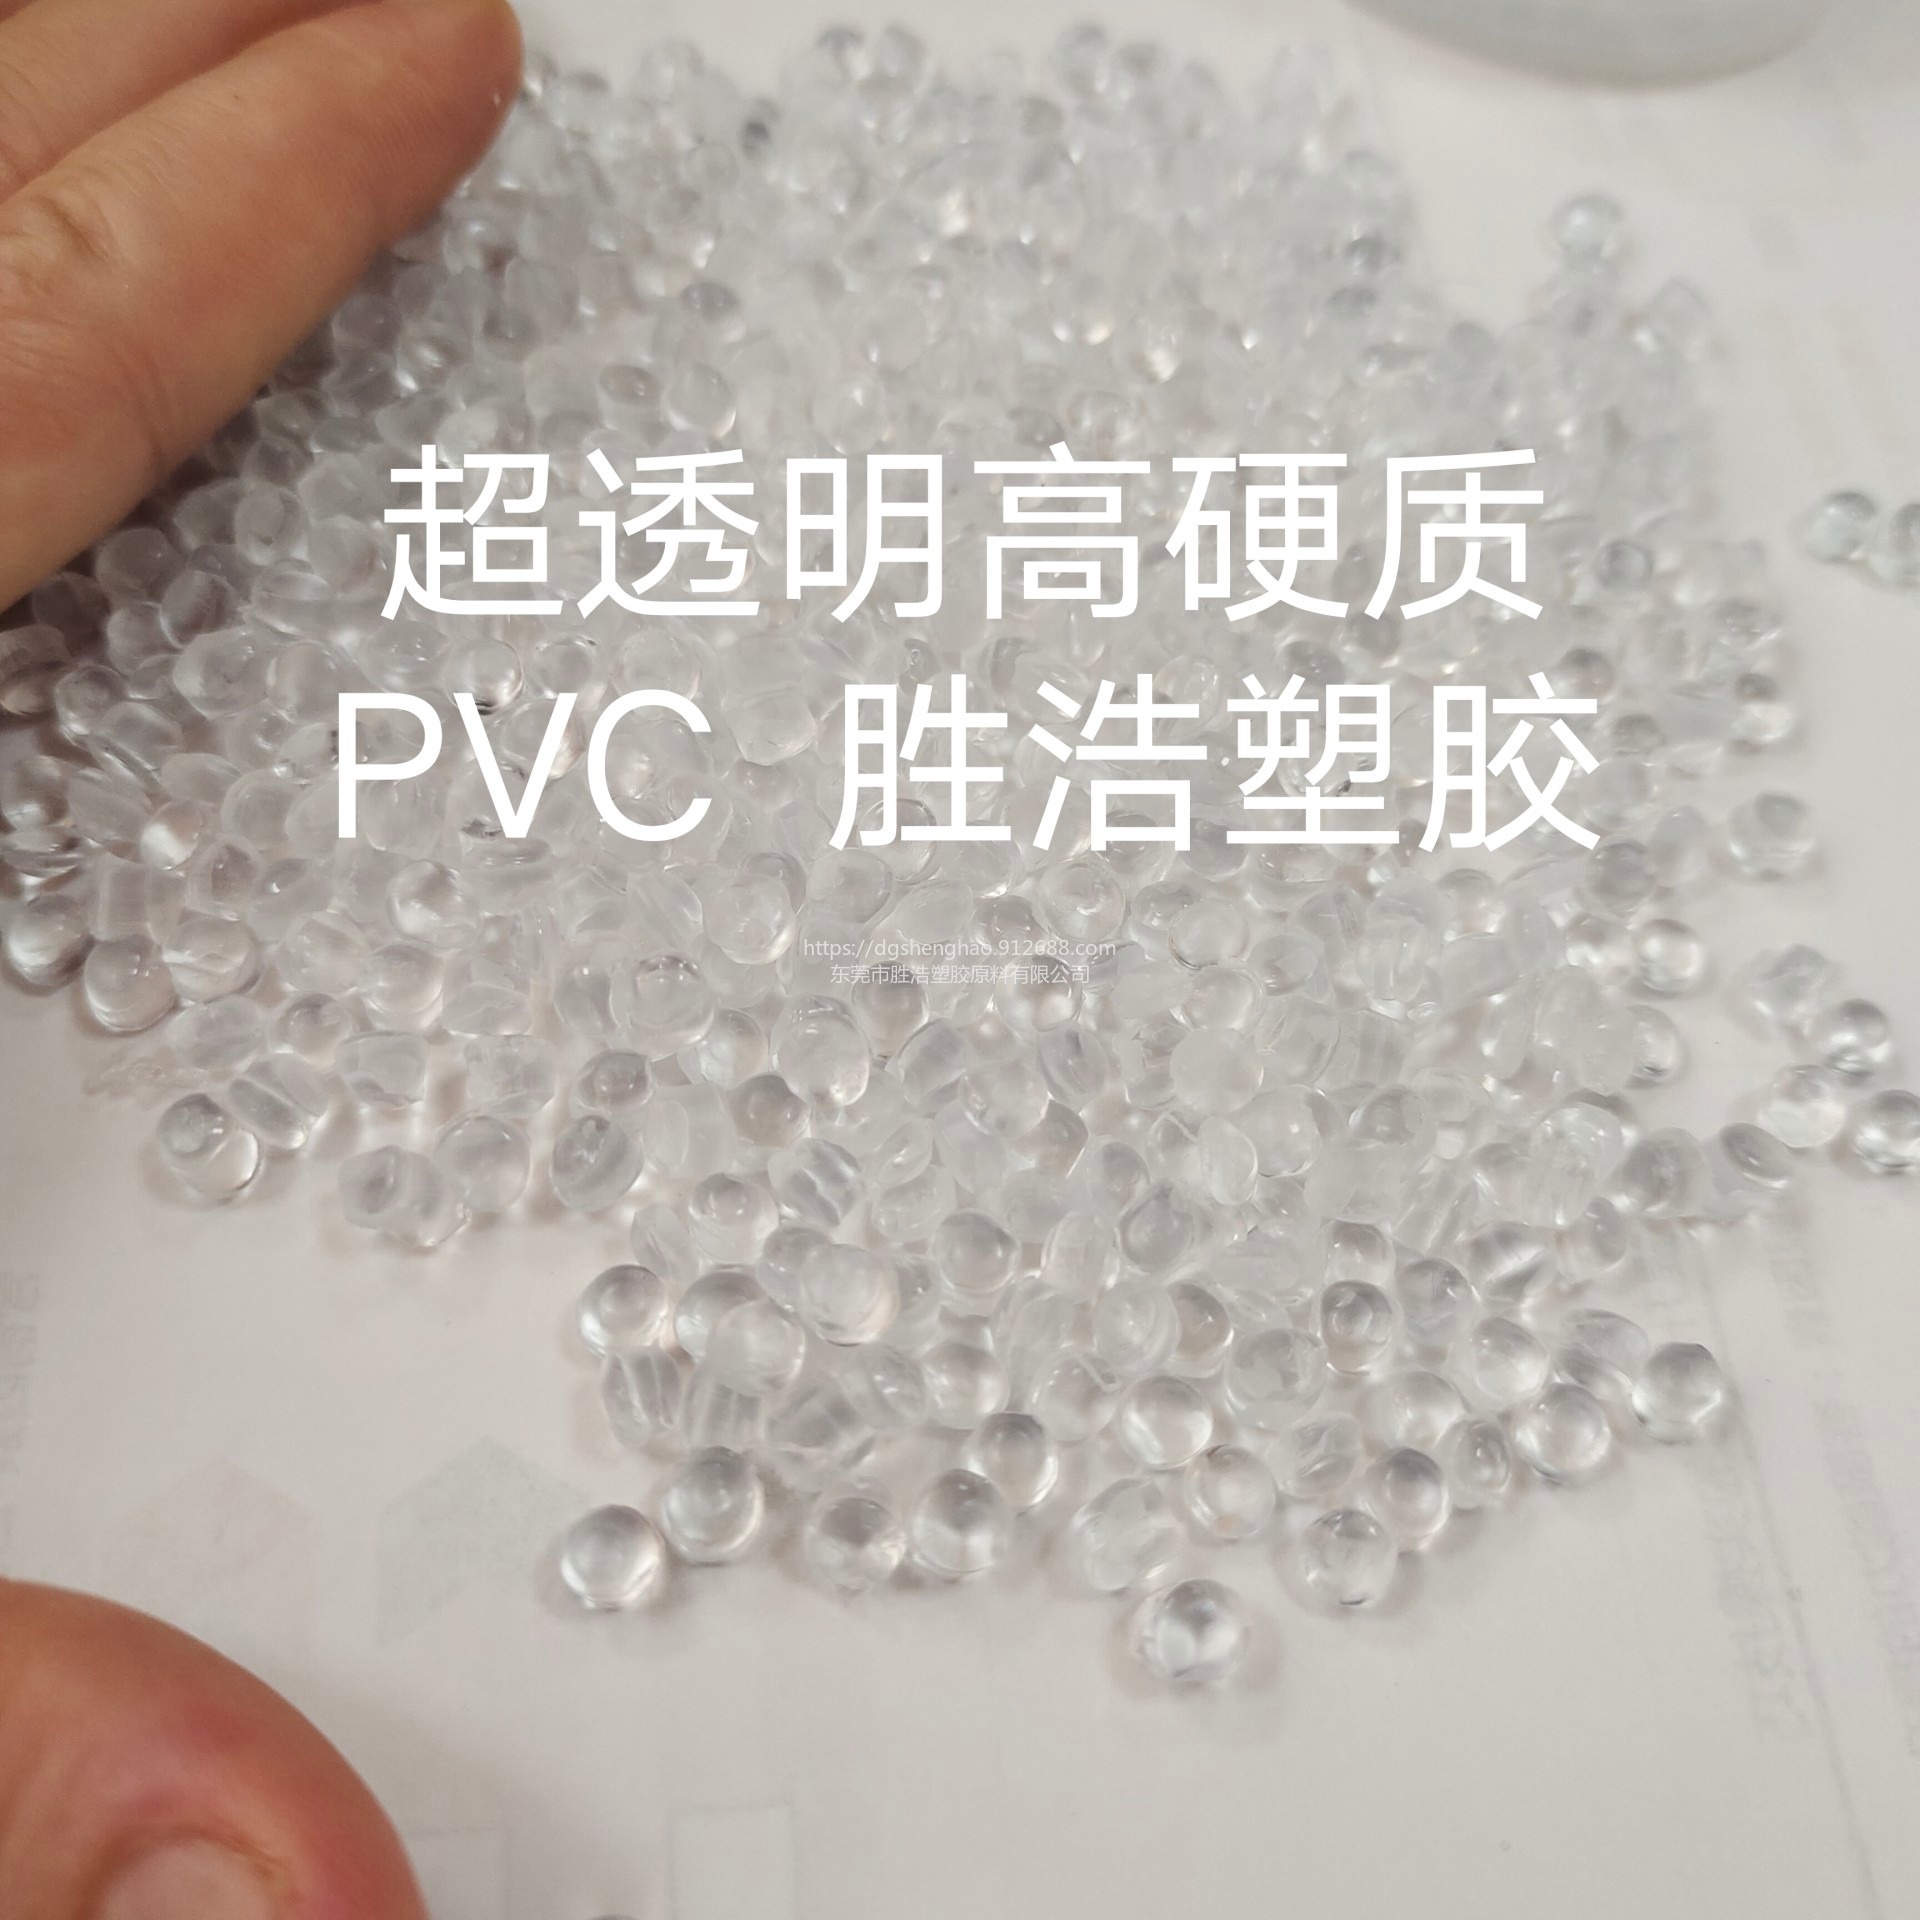 高硬度PVC  超硬聚氯乙烯胶料  120A  110A   高透明度